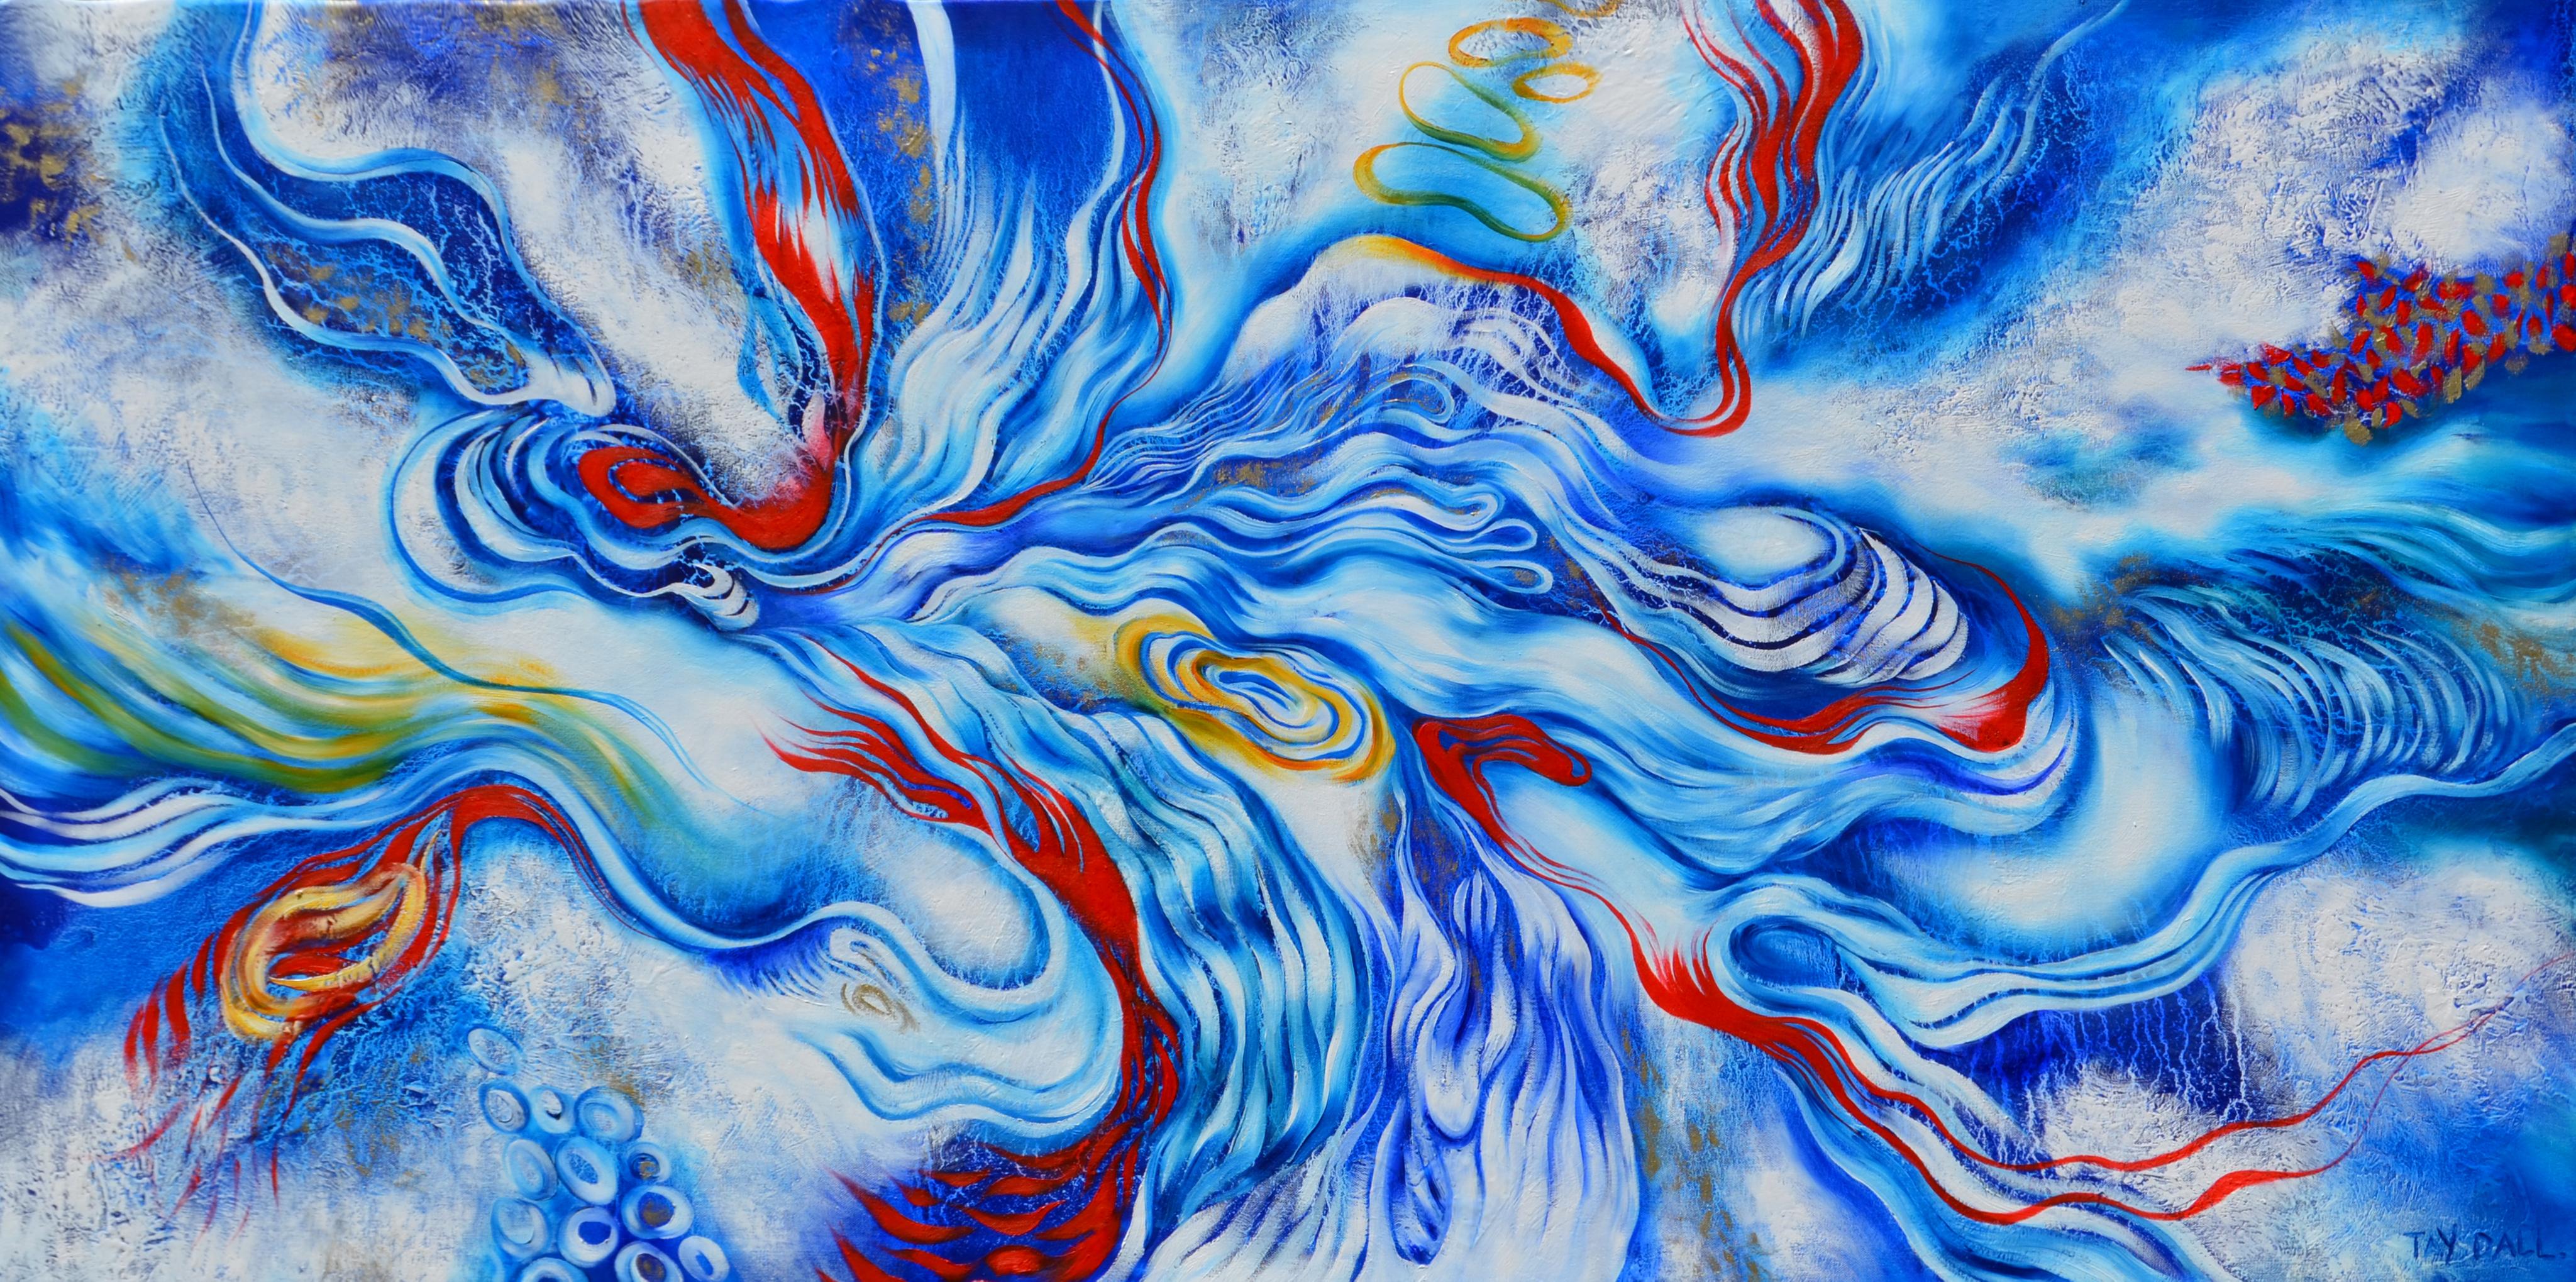 Abstract Painting Tay Dall - Peinture à l'huile abstraite bleue « River Flow Anew 2 » (Fleure d'un nouveau rivage)